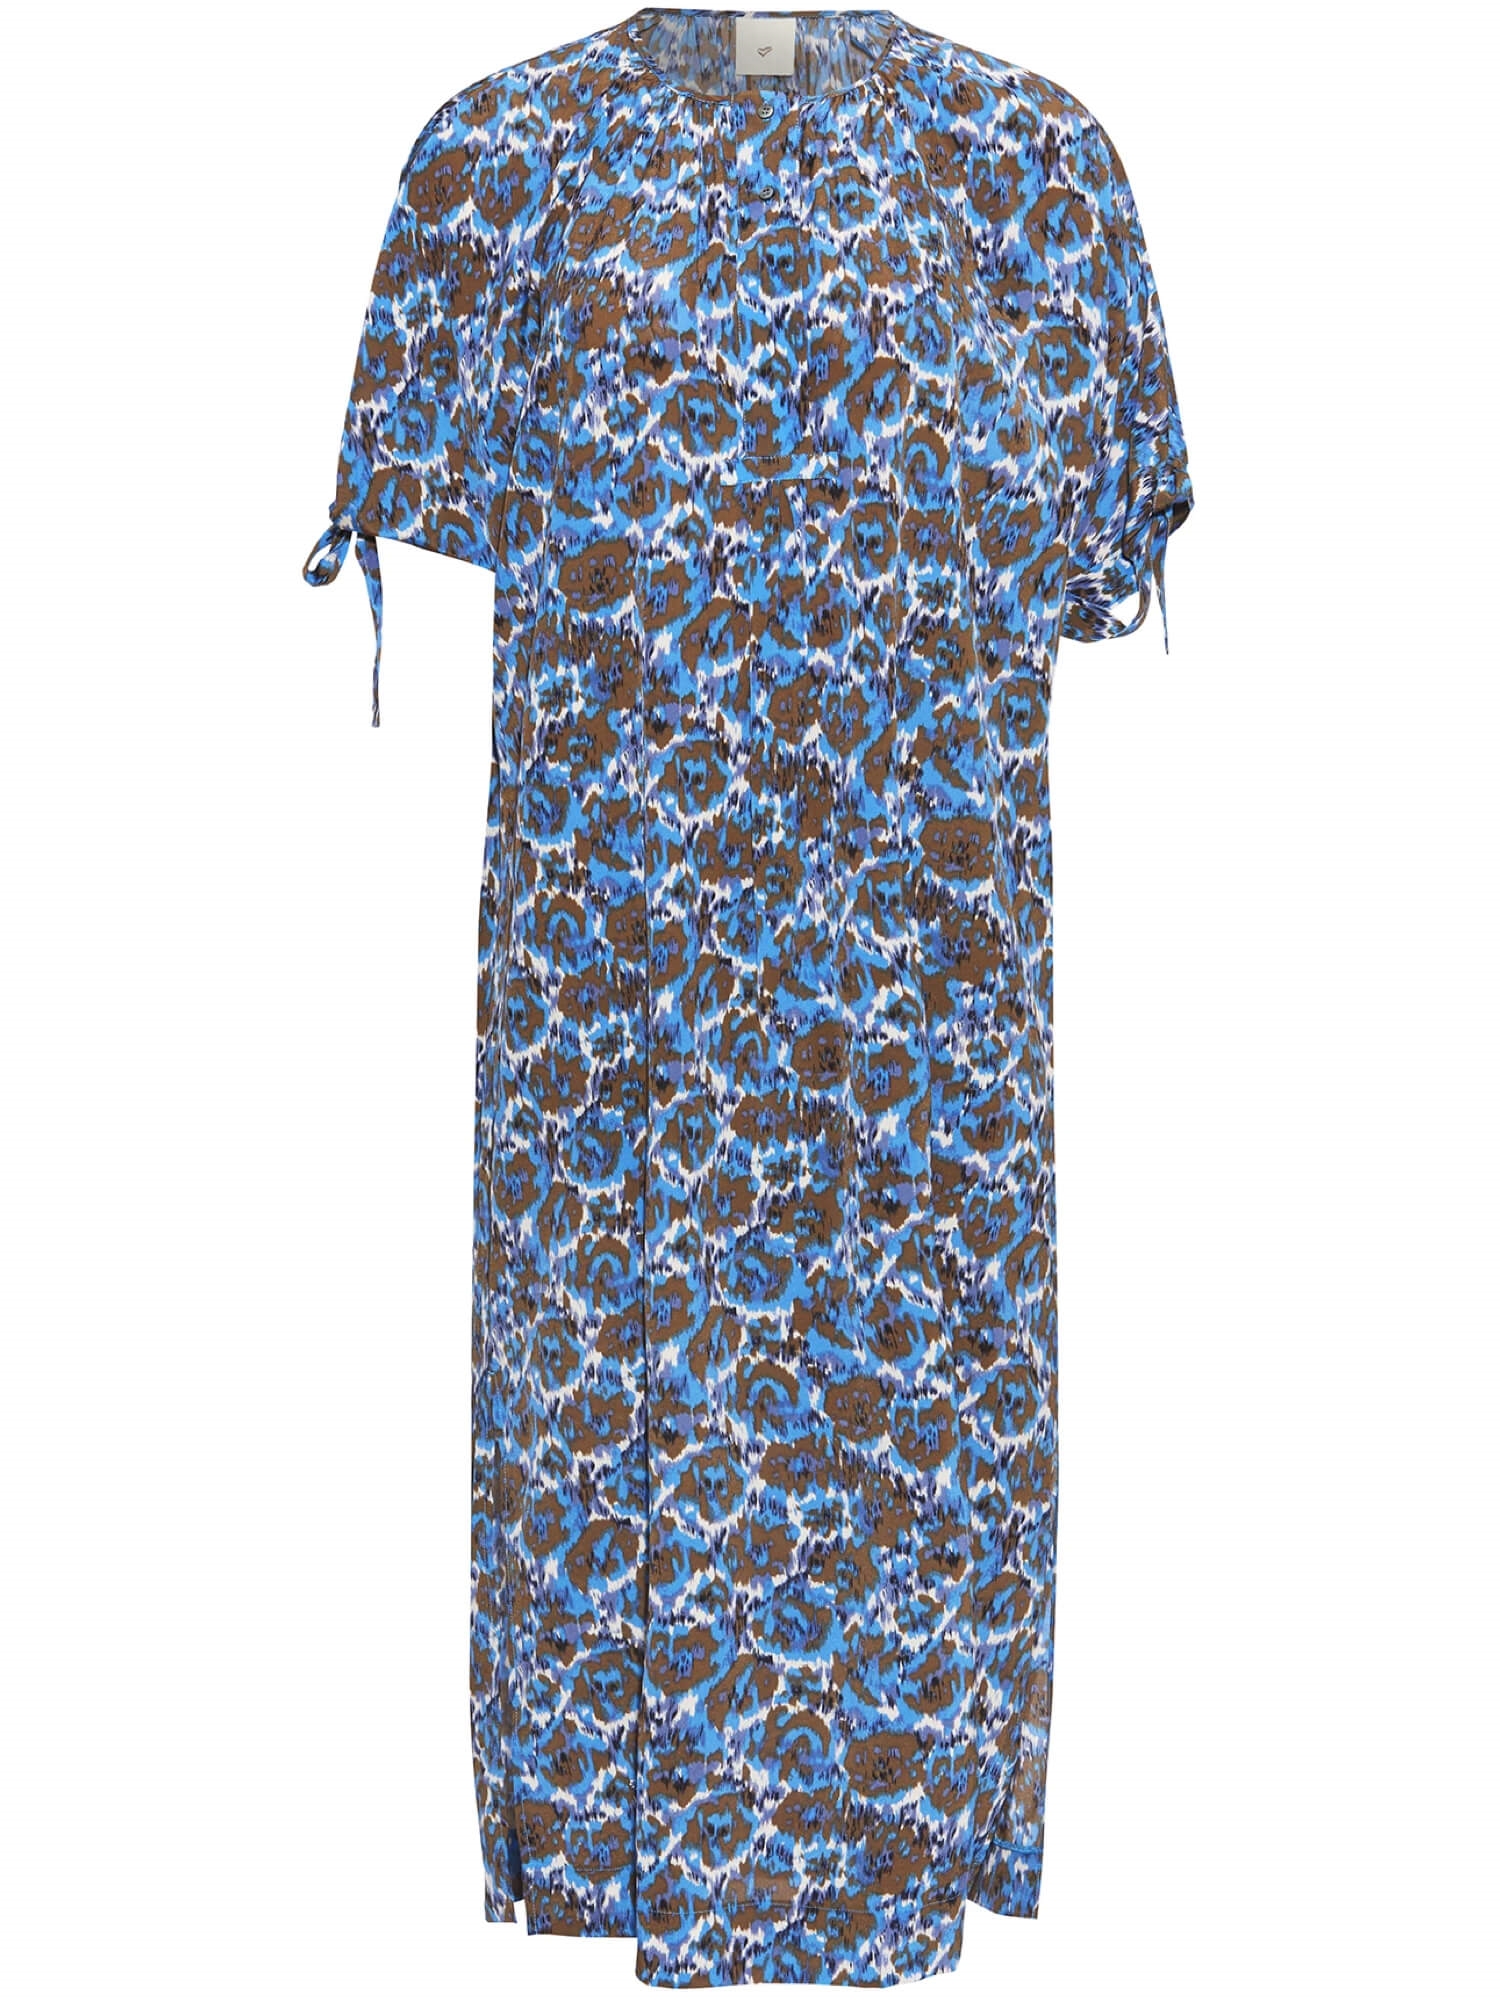 Hej mesterværk Kilde Haklo kjole, blurred blue | Heartmade ♥ shop her